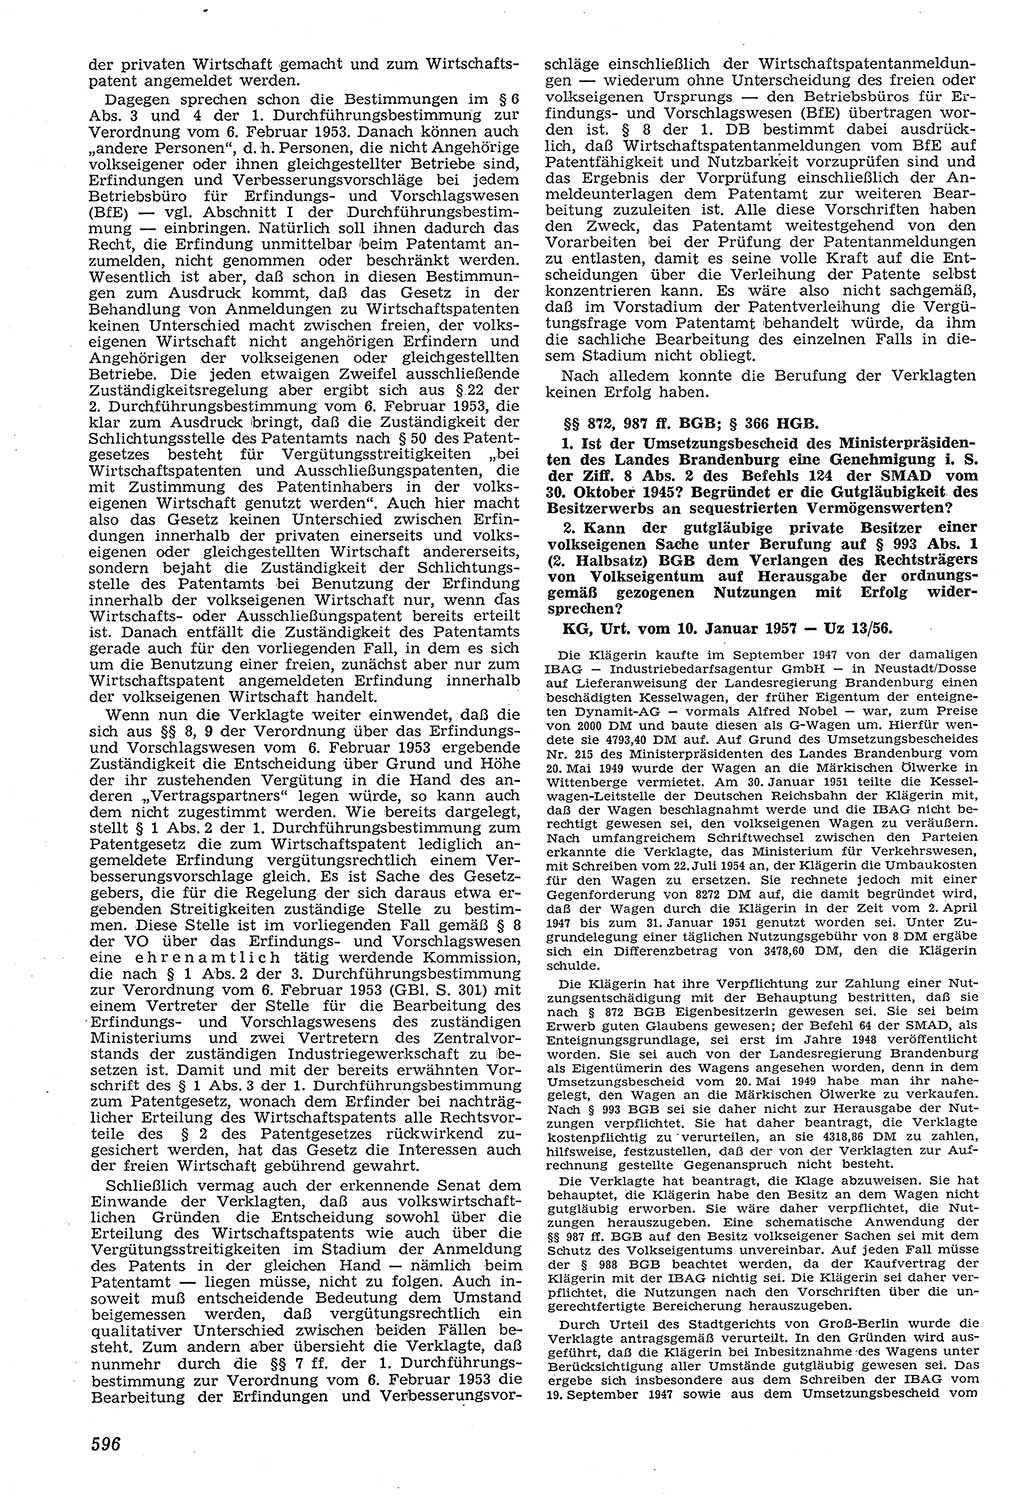 Neue Justiz (NJ), Zeitschrift für Recht und Rechtswissenschaft [Deutsche Demokratische Republik (DDR)], 11. Jahrgang 1957, Seite 596 (NJ DDR 1957, S. 596)